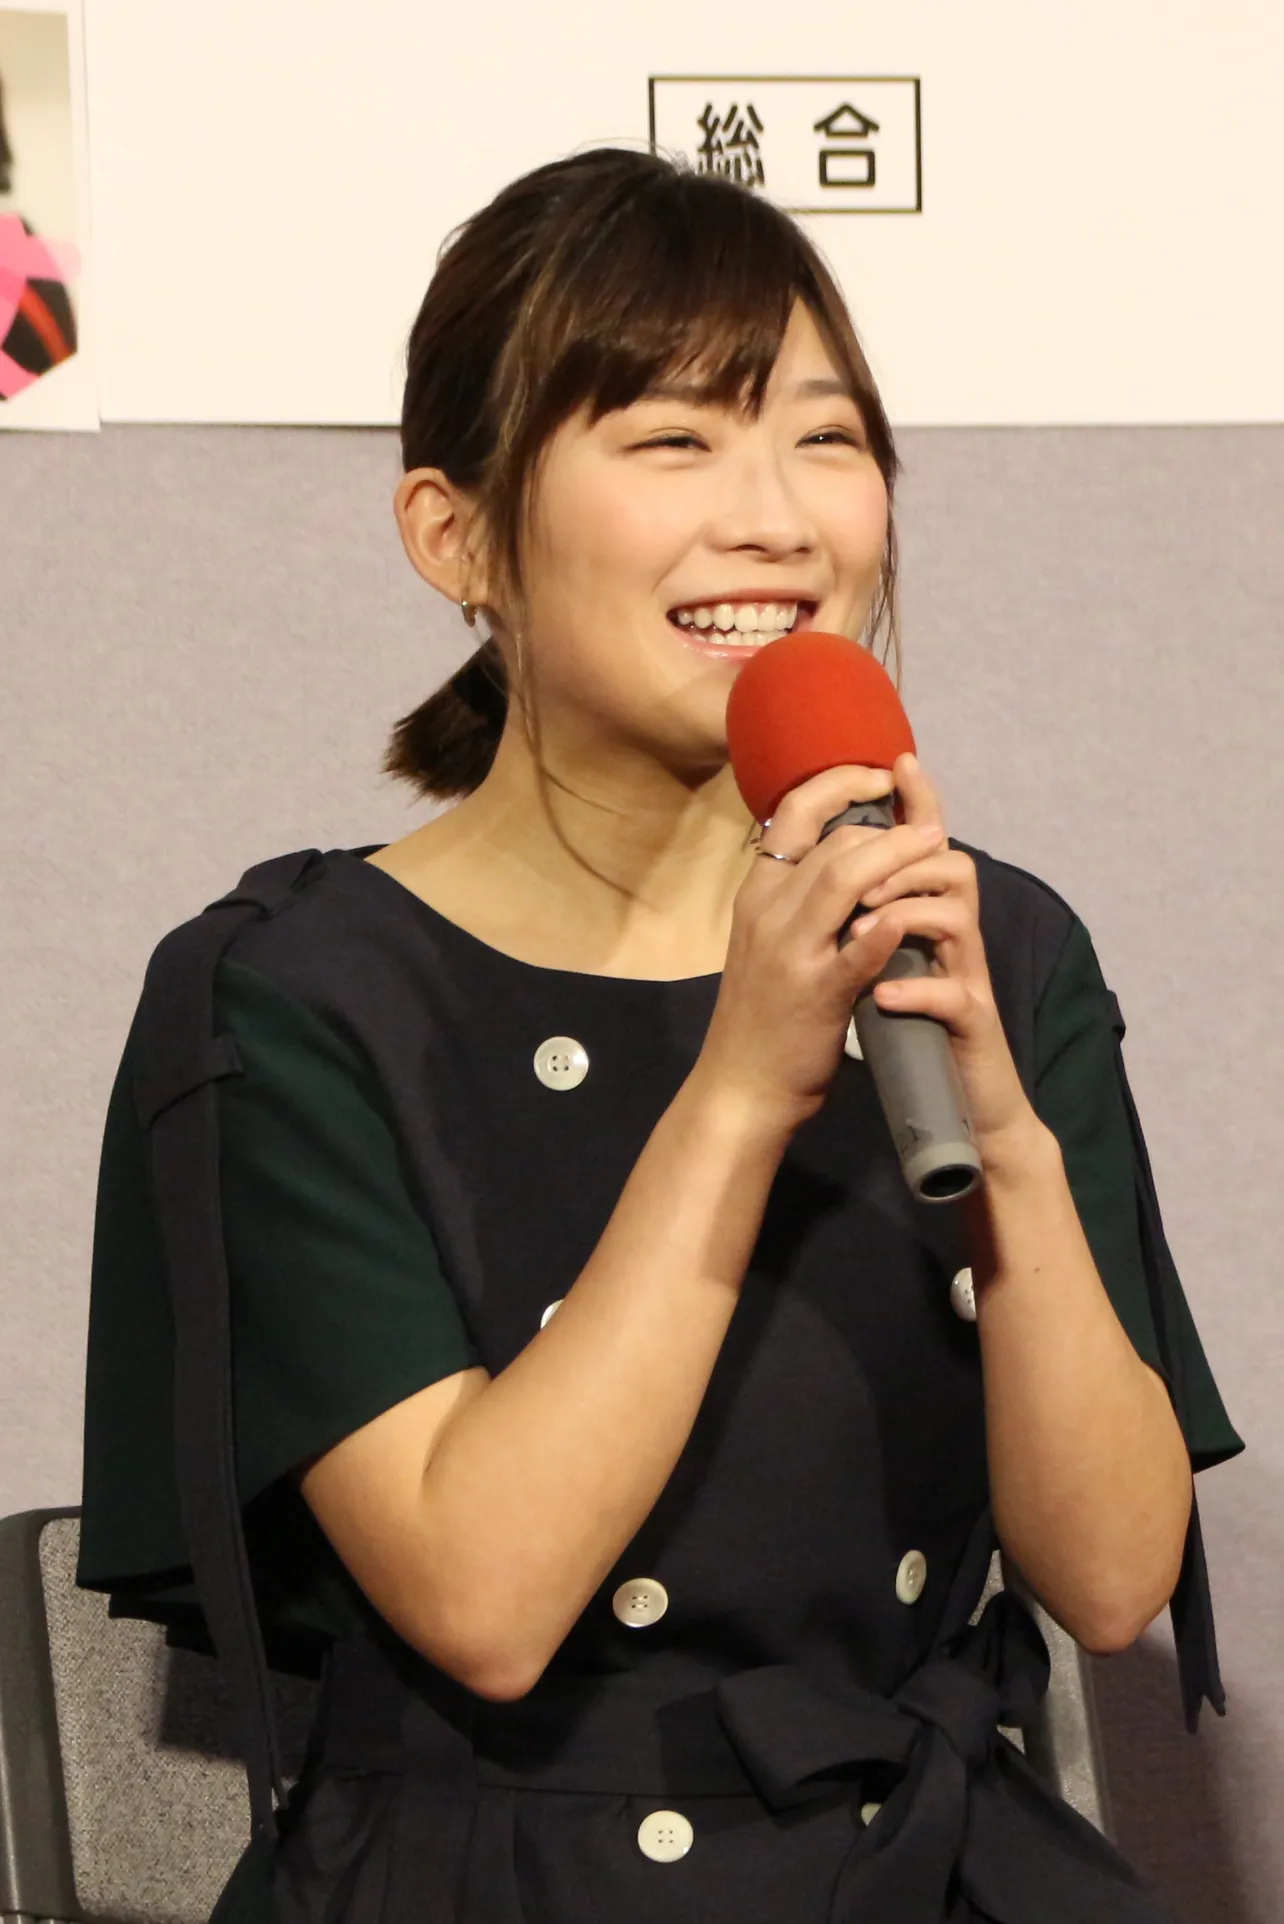 「ちょいドラ2019」(NHK総合)の「ダークマターな女」で主人公を演じる伊藤沙莉